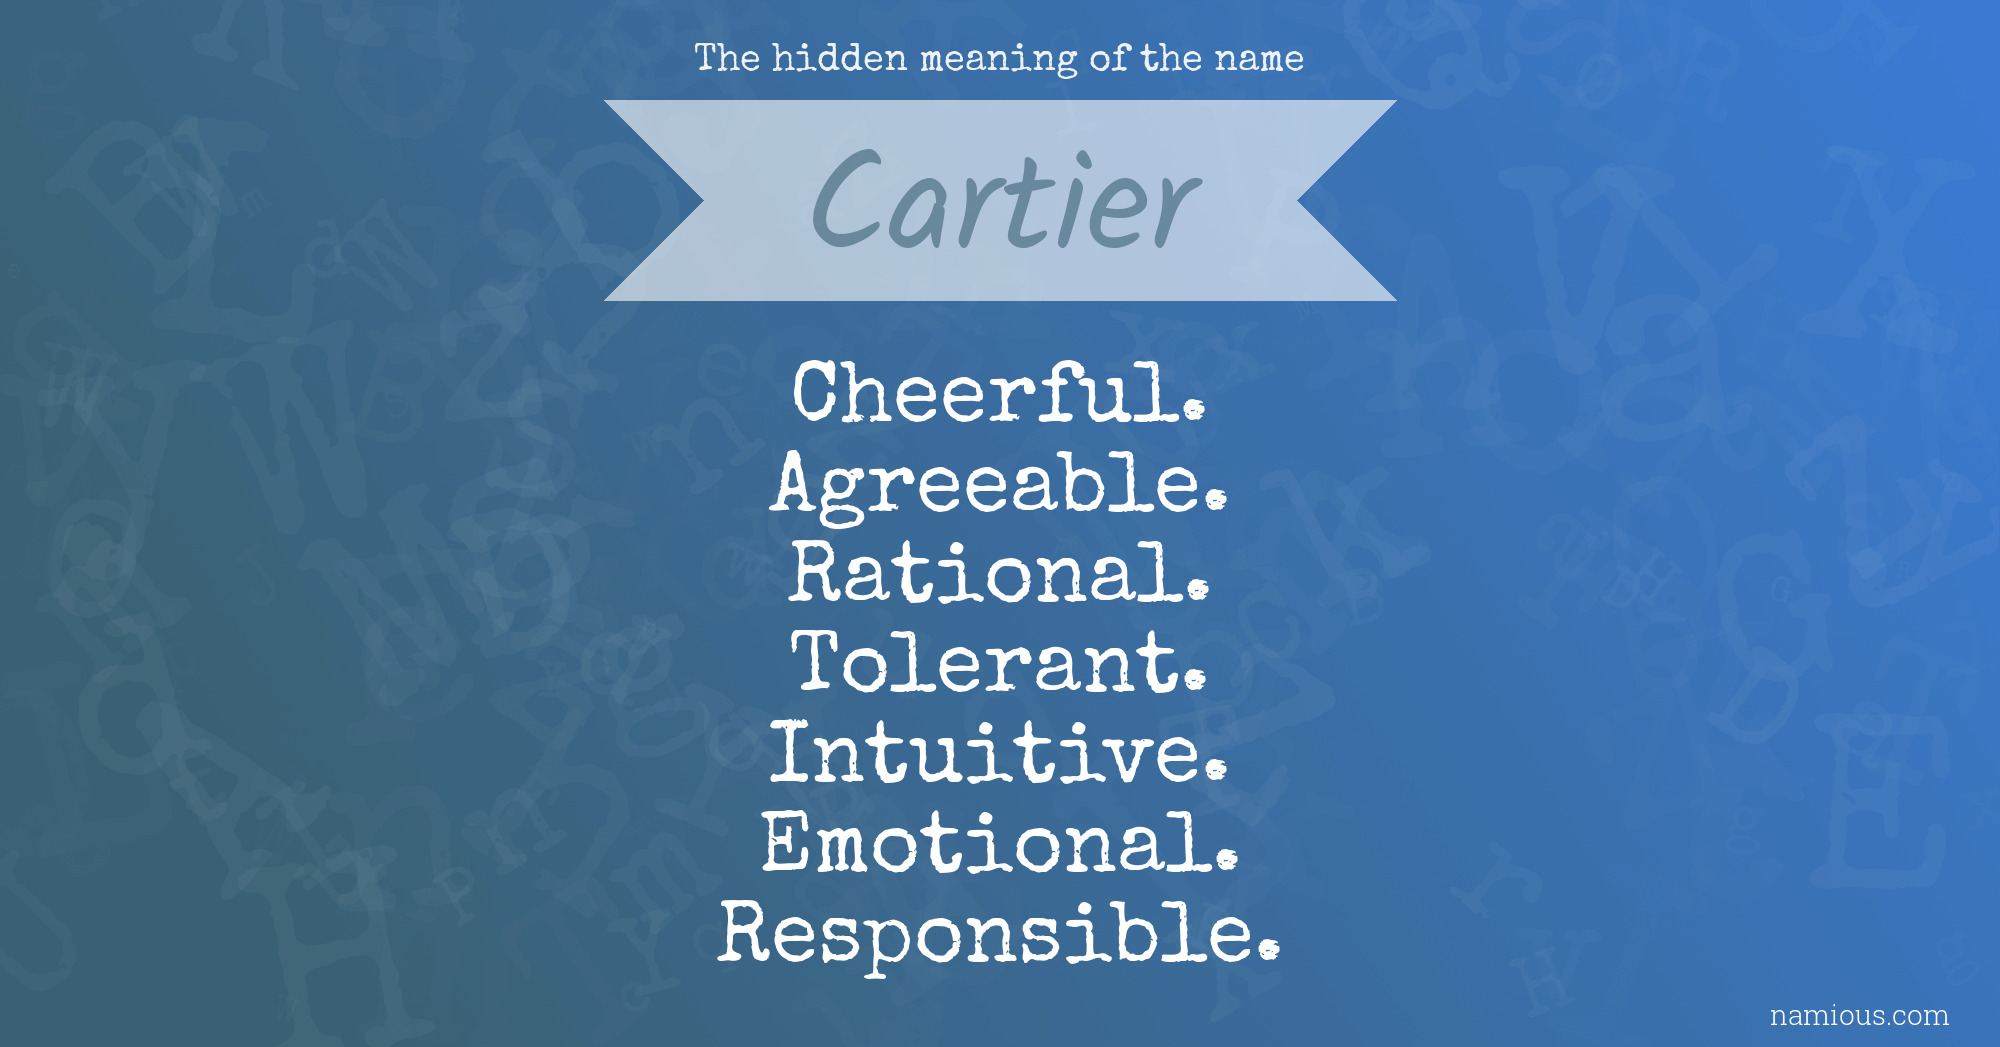 cartier as a name